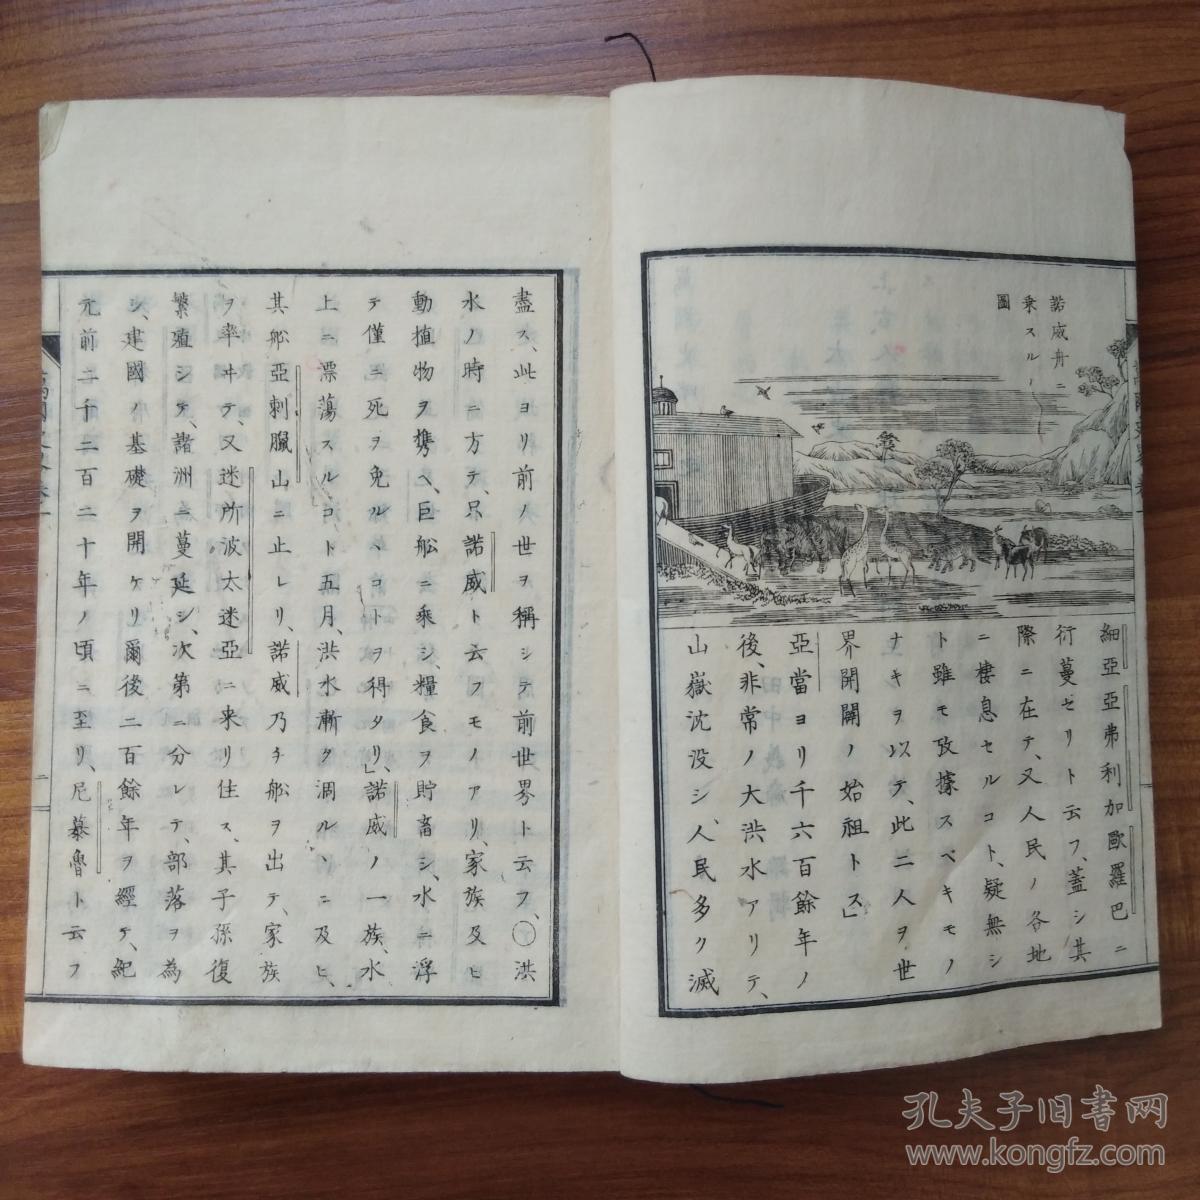 线装历史地理书 和刻本 1880年出版《万国史略